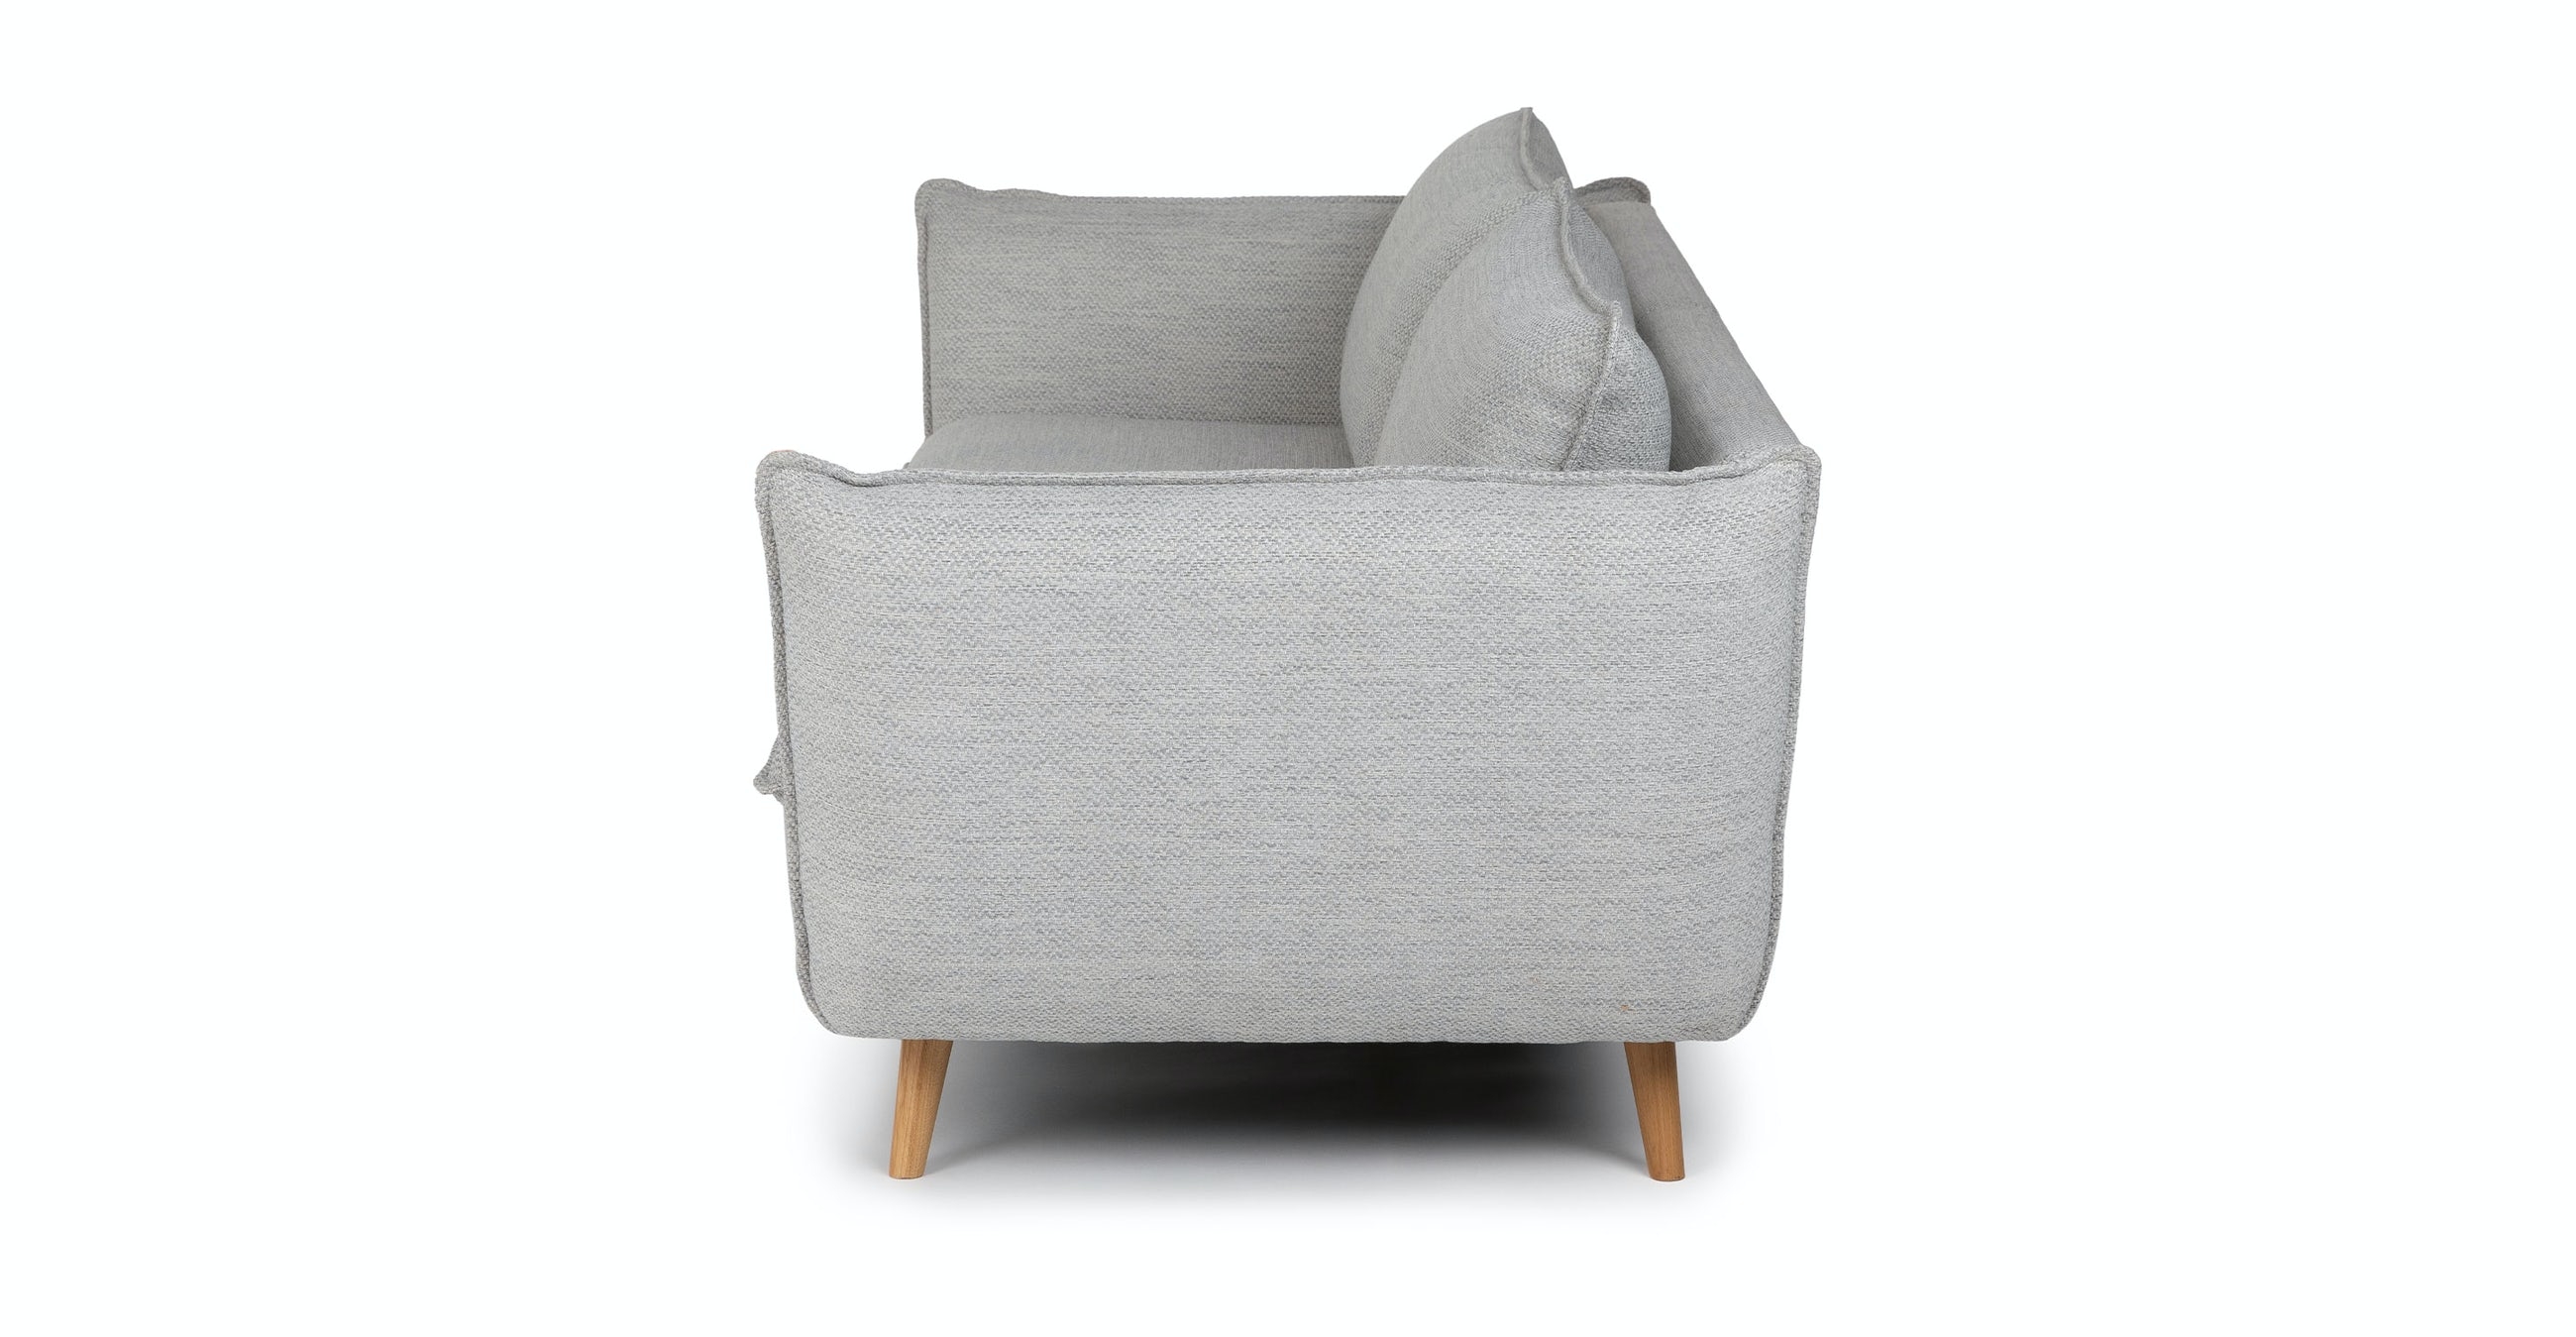 Avem Wren Gray Sofa - Image 2